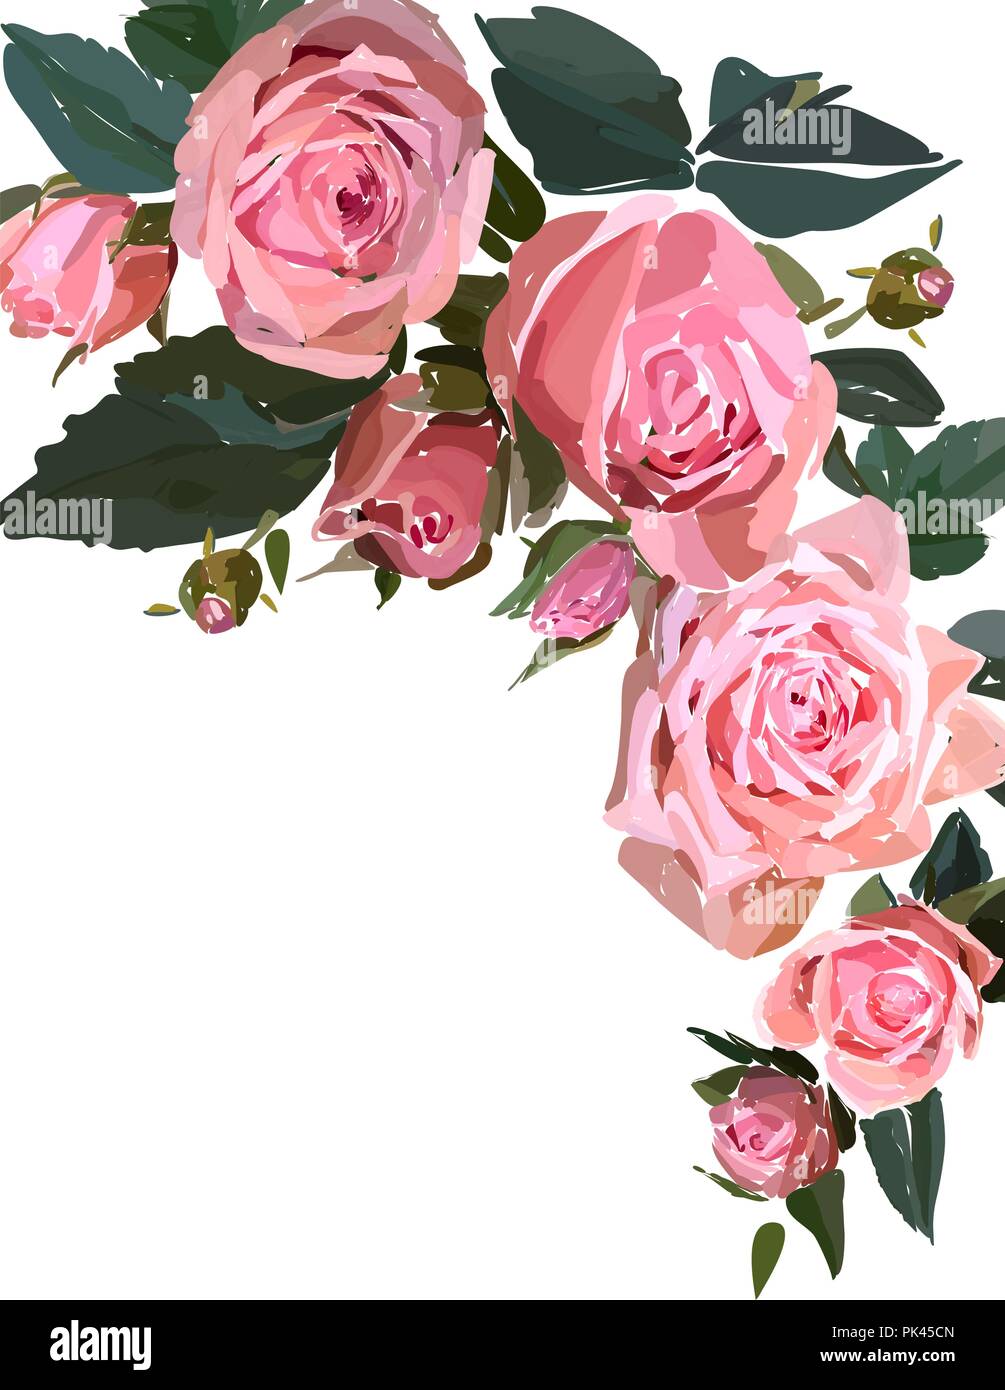 Chỉ với biểu tượng thiết kế hoa văn cùng hình ảnh hoa hồng hồng vườn izolated trên, bạn đã có thể cảm nhận được sự tinh tế và nghệ thuật của thiết kế này. Click ngay để khám phá và bắt đầu sự khám phá đầy thú vị thông qua hình ảnh liên quan đến từ khóa này.